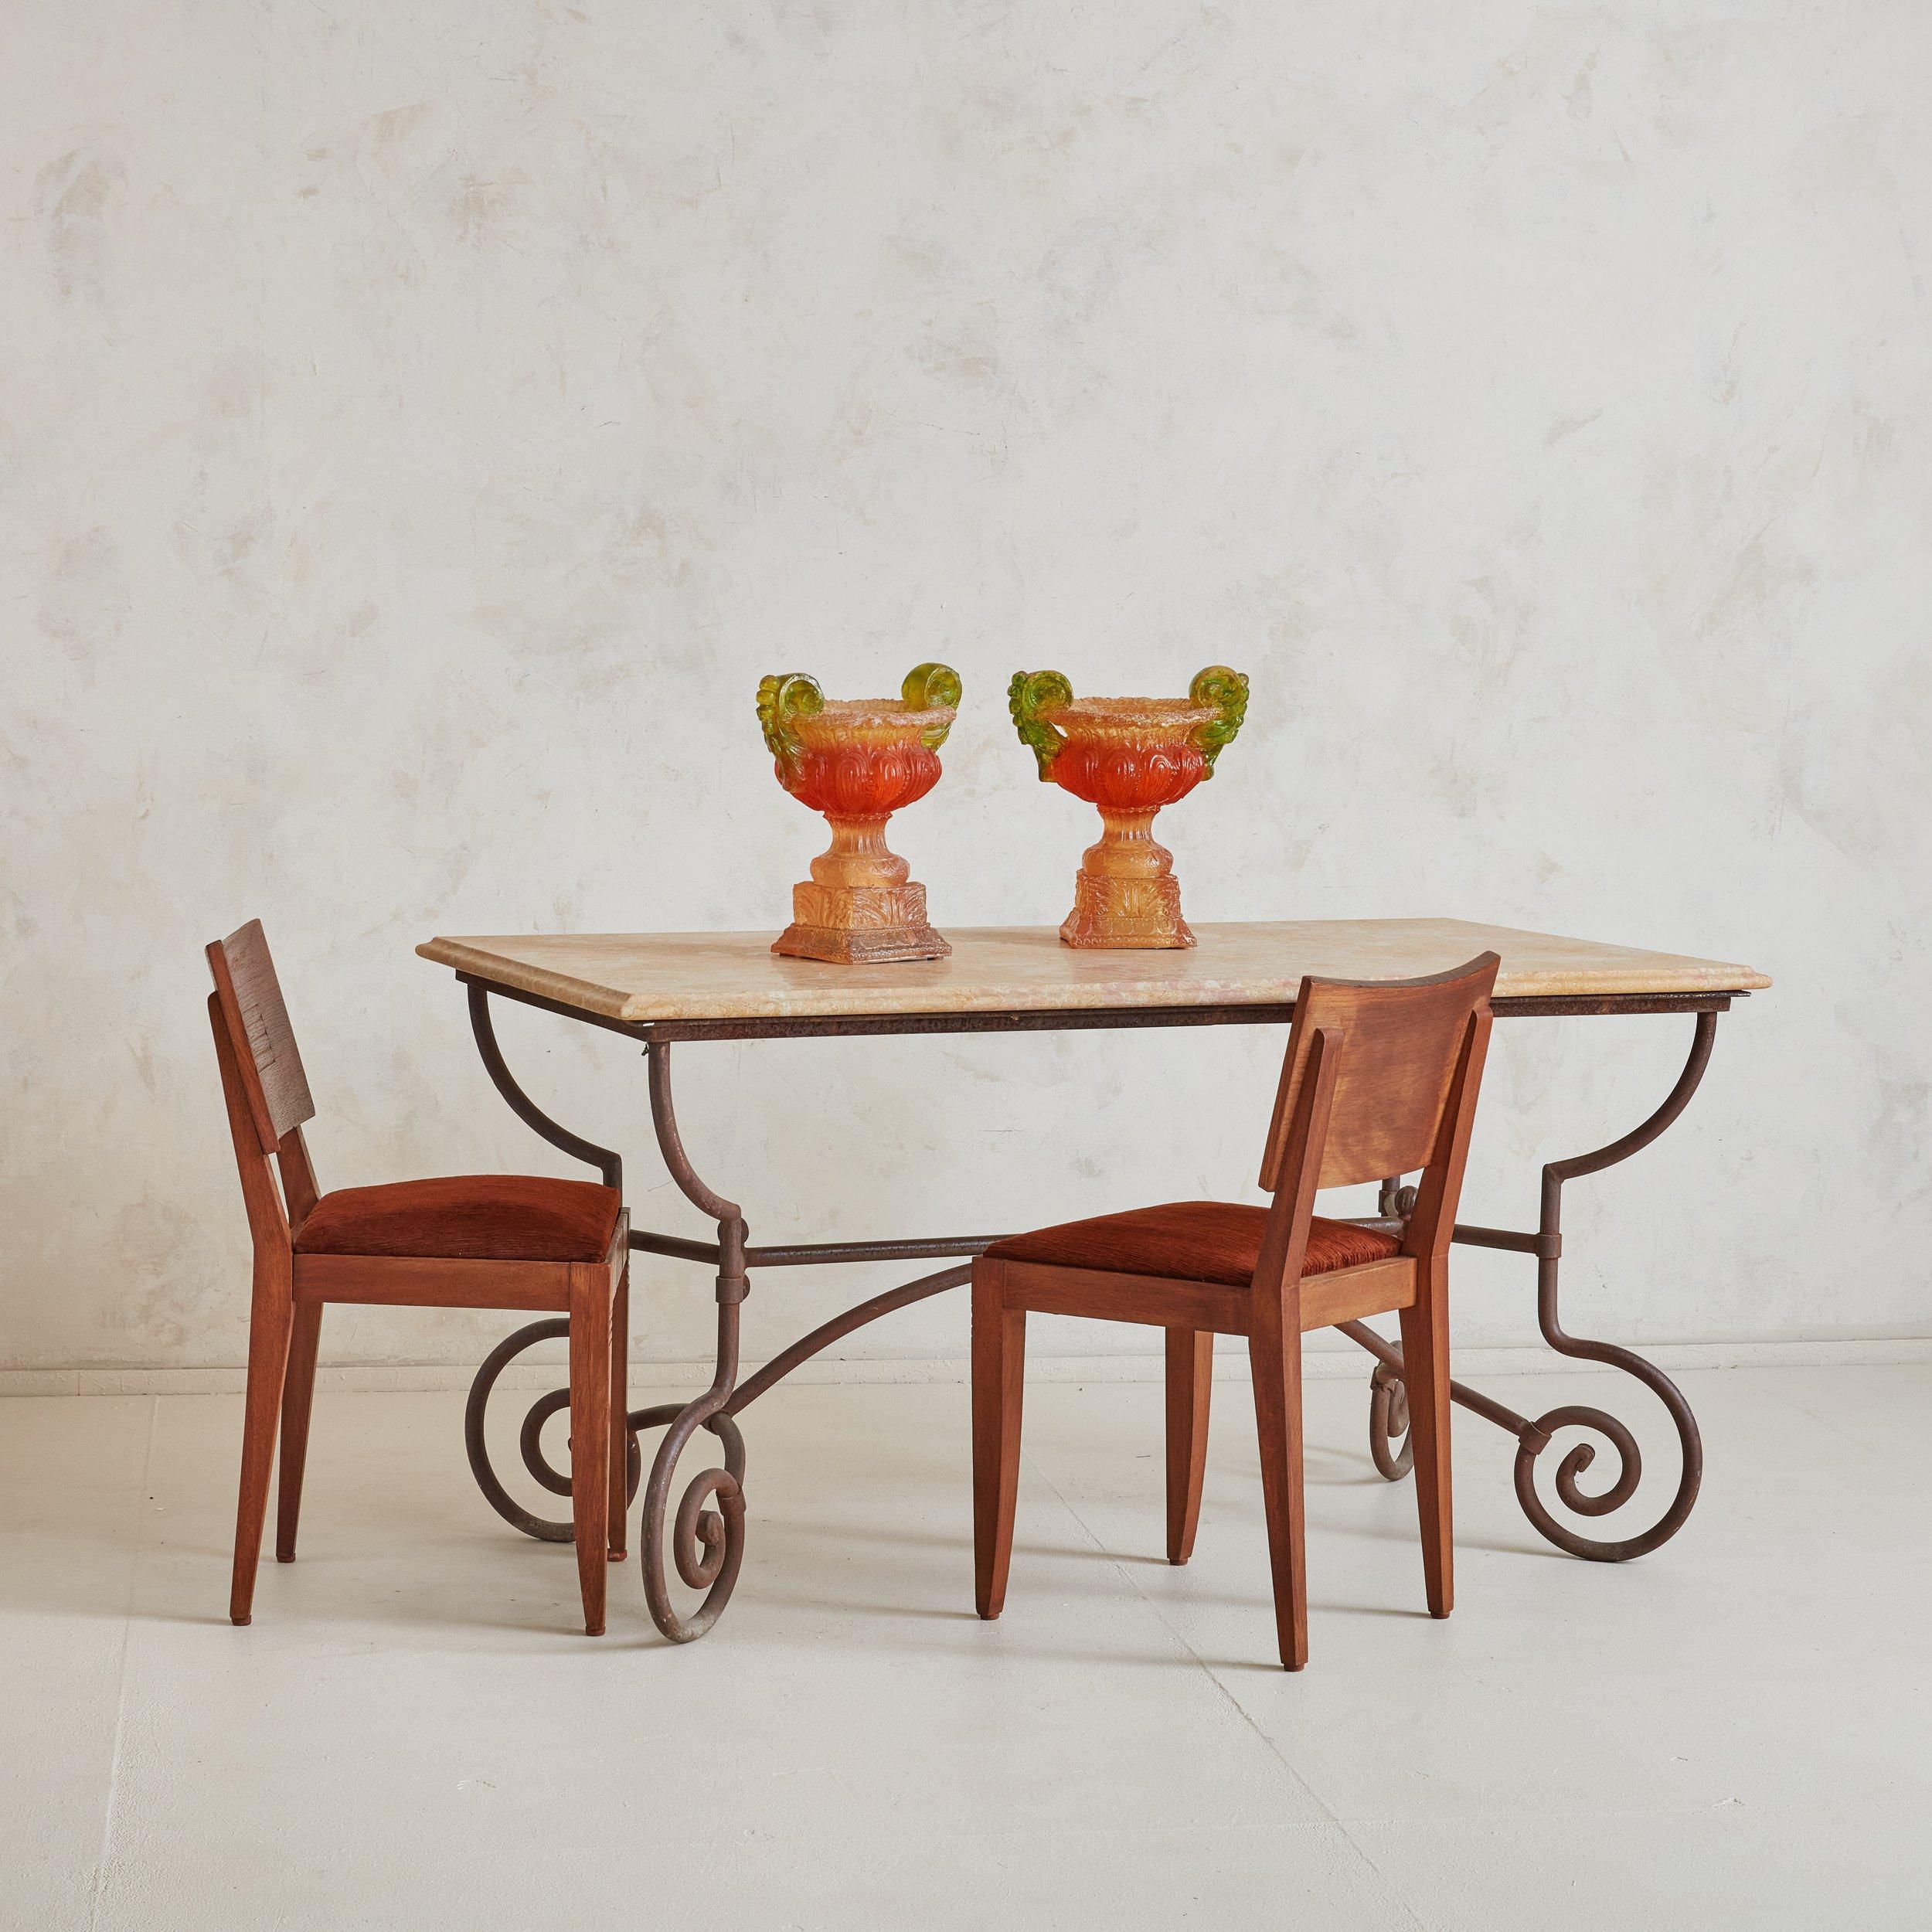 Une magnifique table de salle à manger classique ou une table d'appoint du sud de la France. La base en fer forgé est l'un de nos matériaux préférés et cette table présente une base incurvée bellement forgée. Le plateau de table en marbre a été